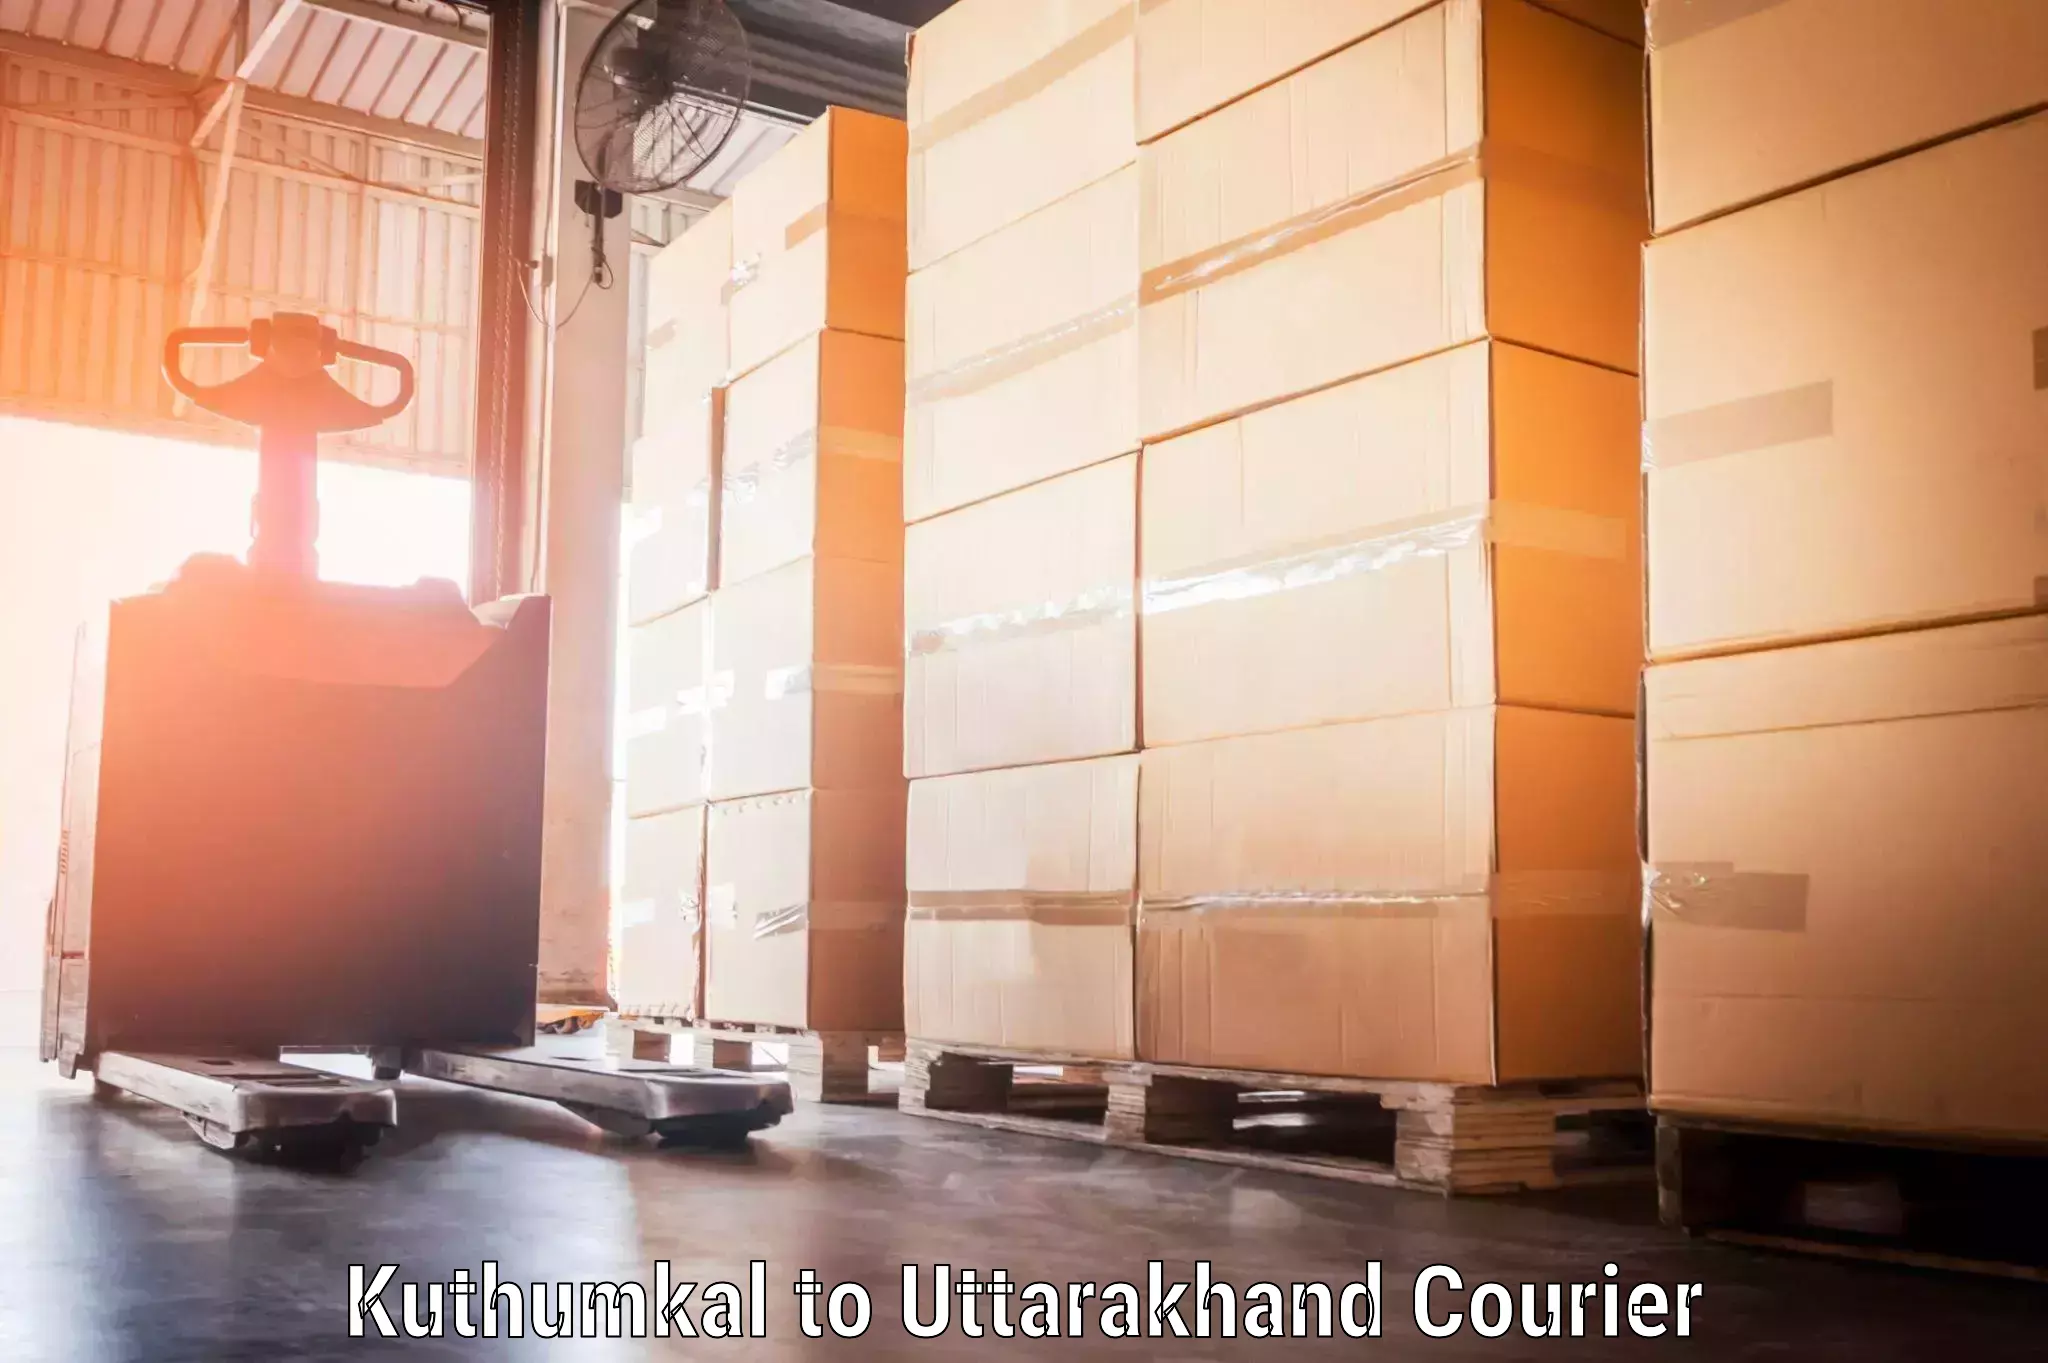 Baggage transport professionals Kuthumkal to Uttarakhand